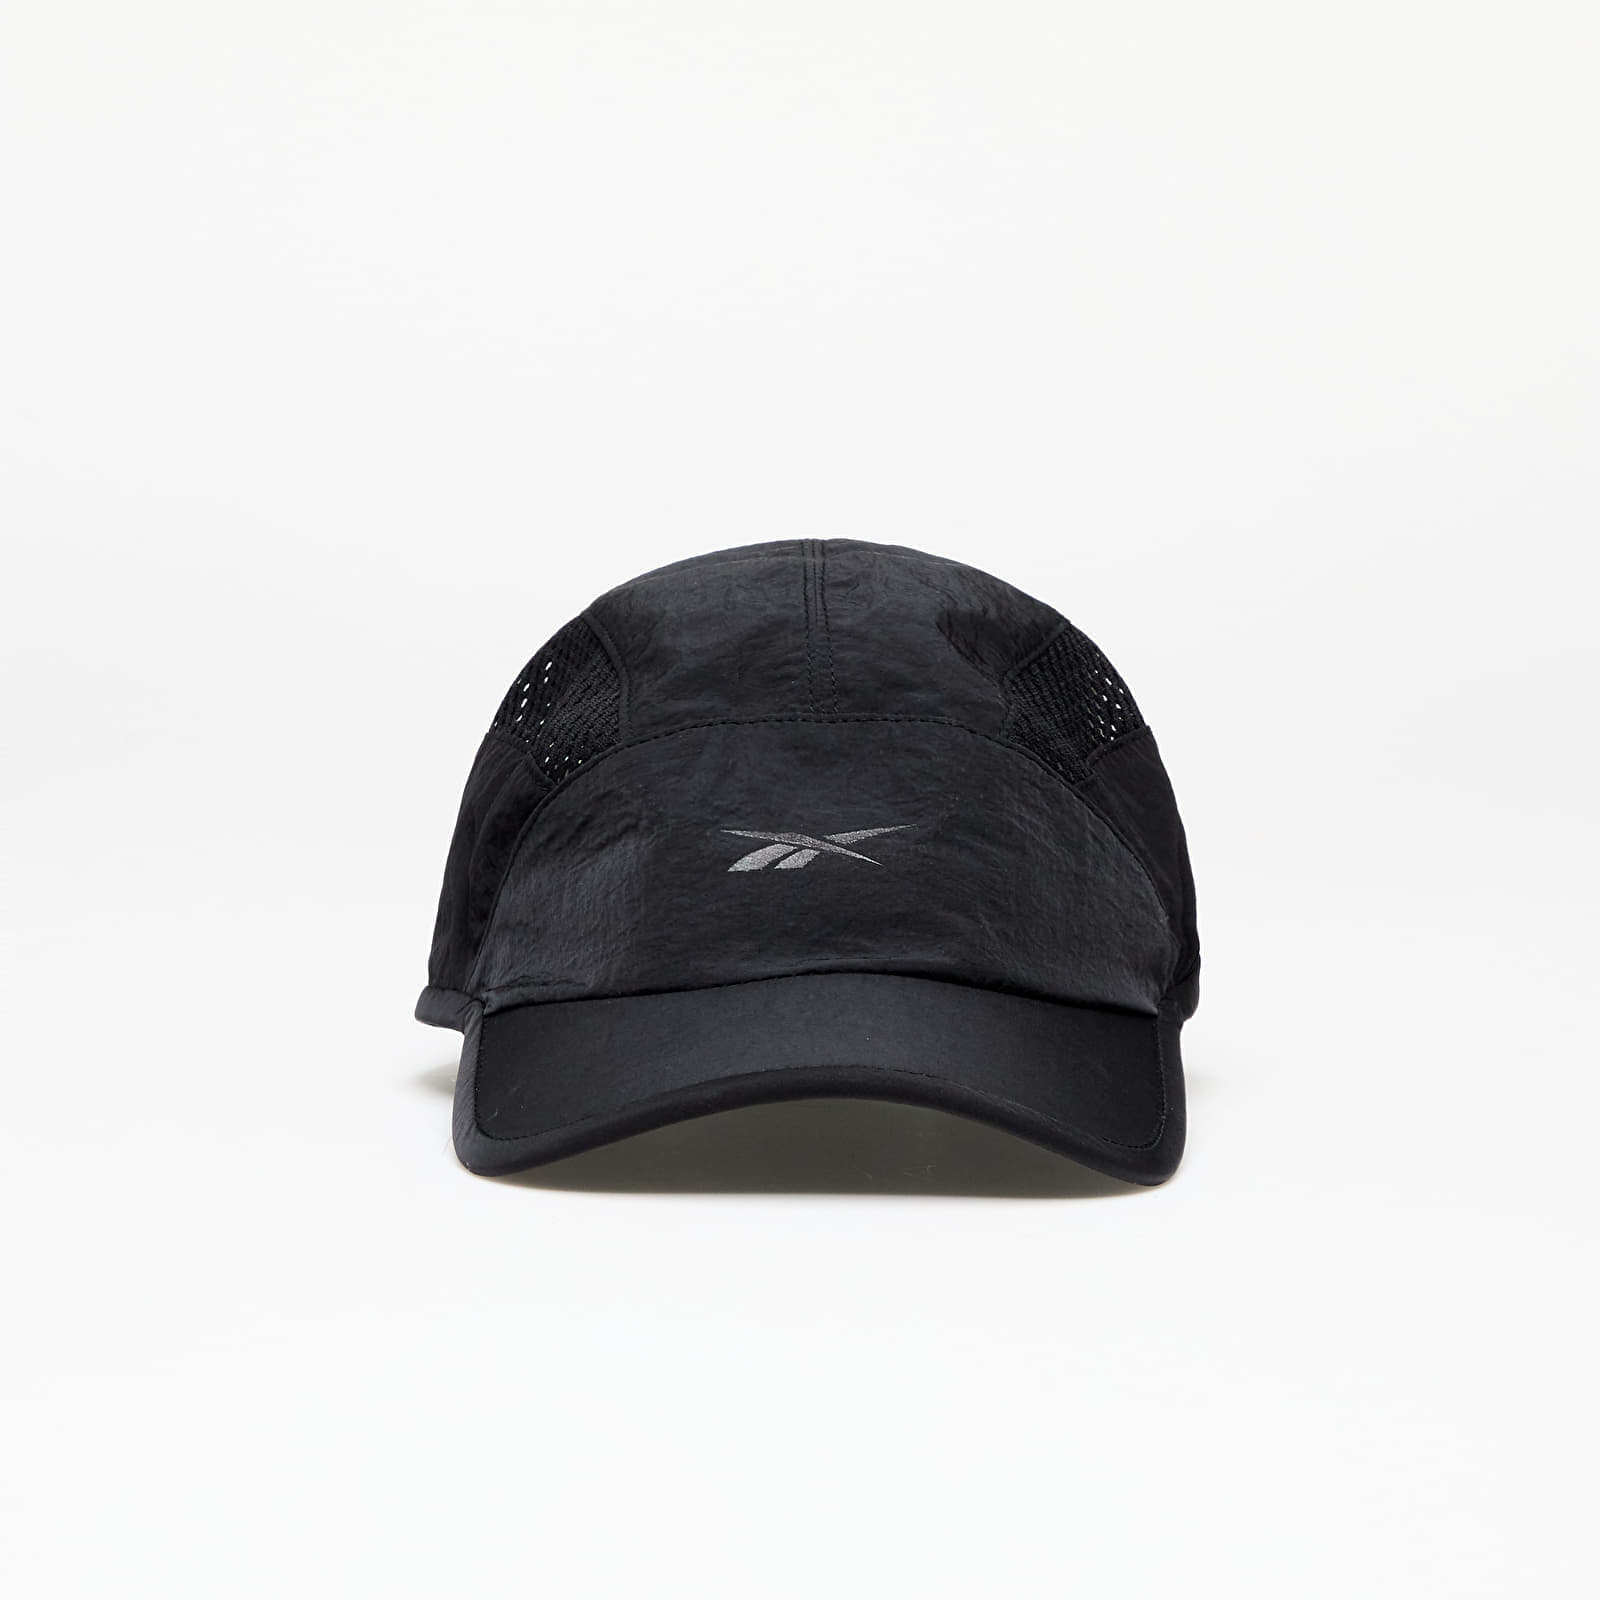 Reebok - baseball cap black